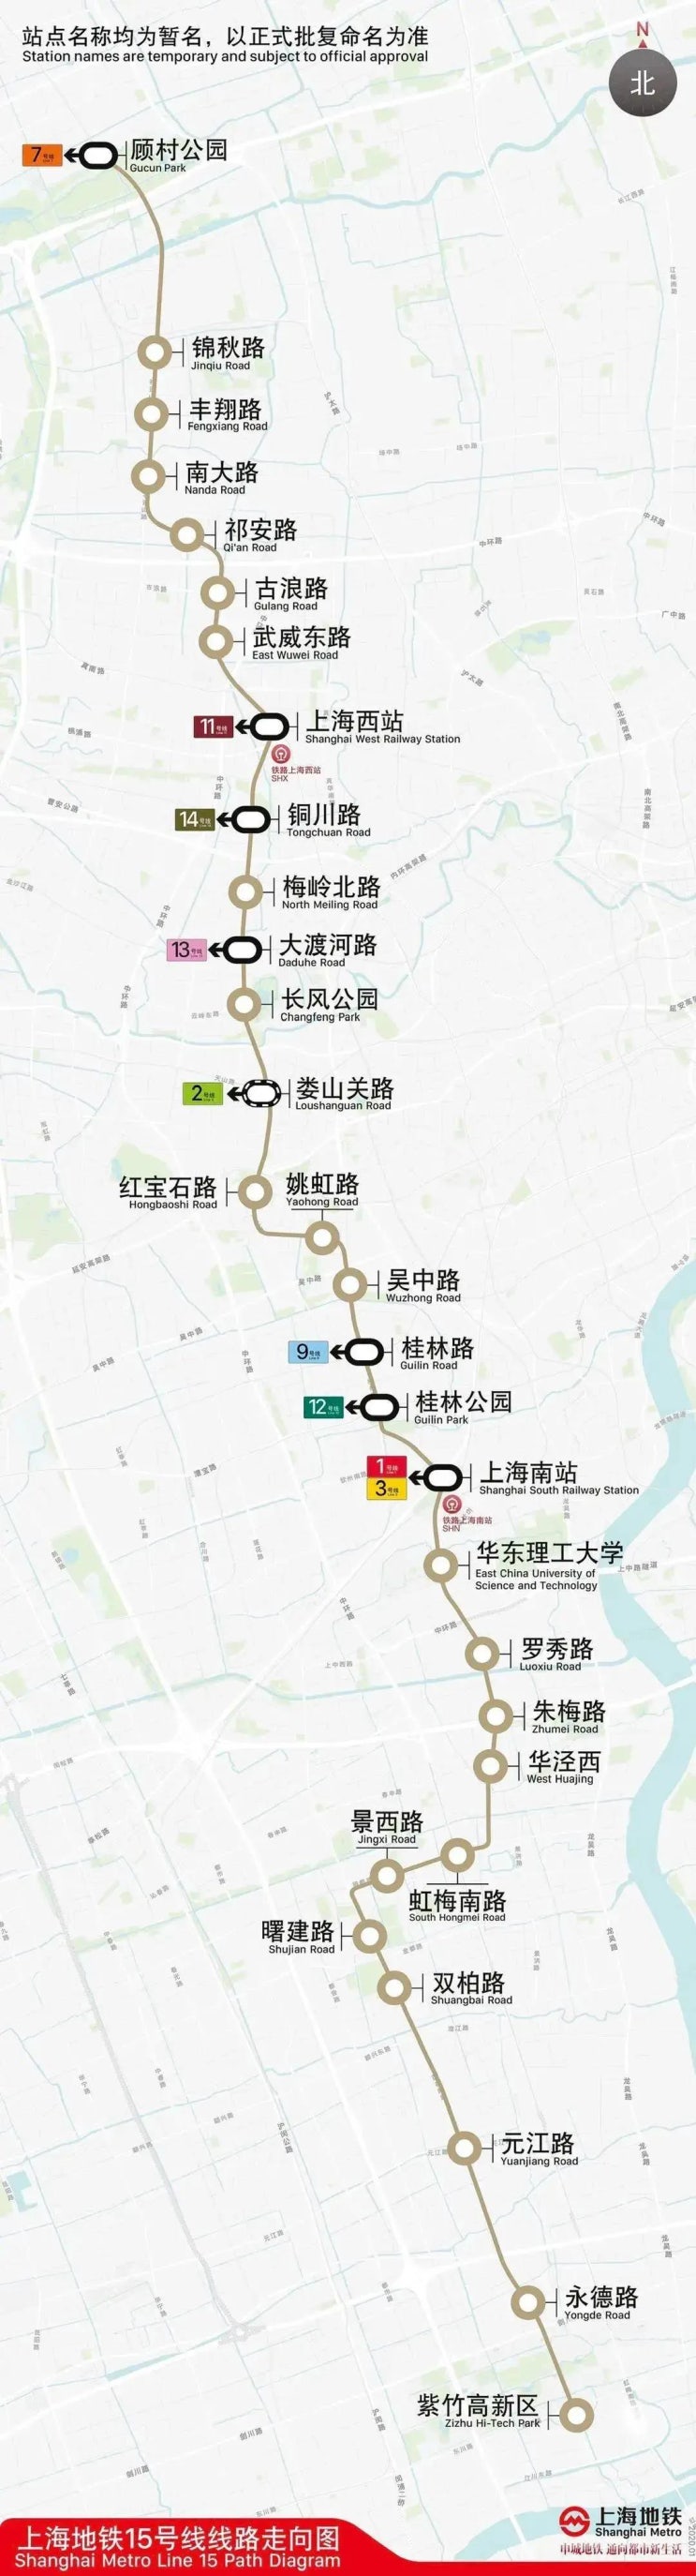 [중국교통] 상하이 민항 캠퍼스 근처 지하철 15호선, 23호선 개통 예정